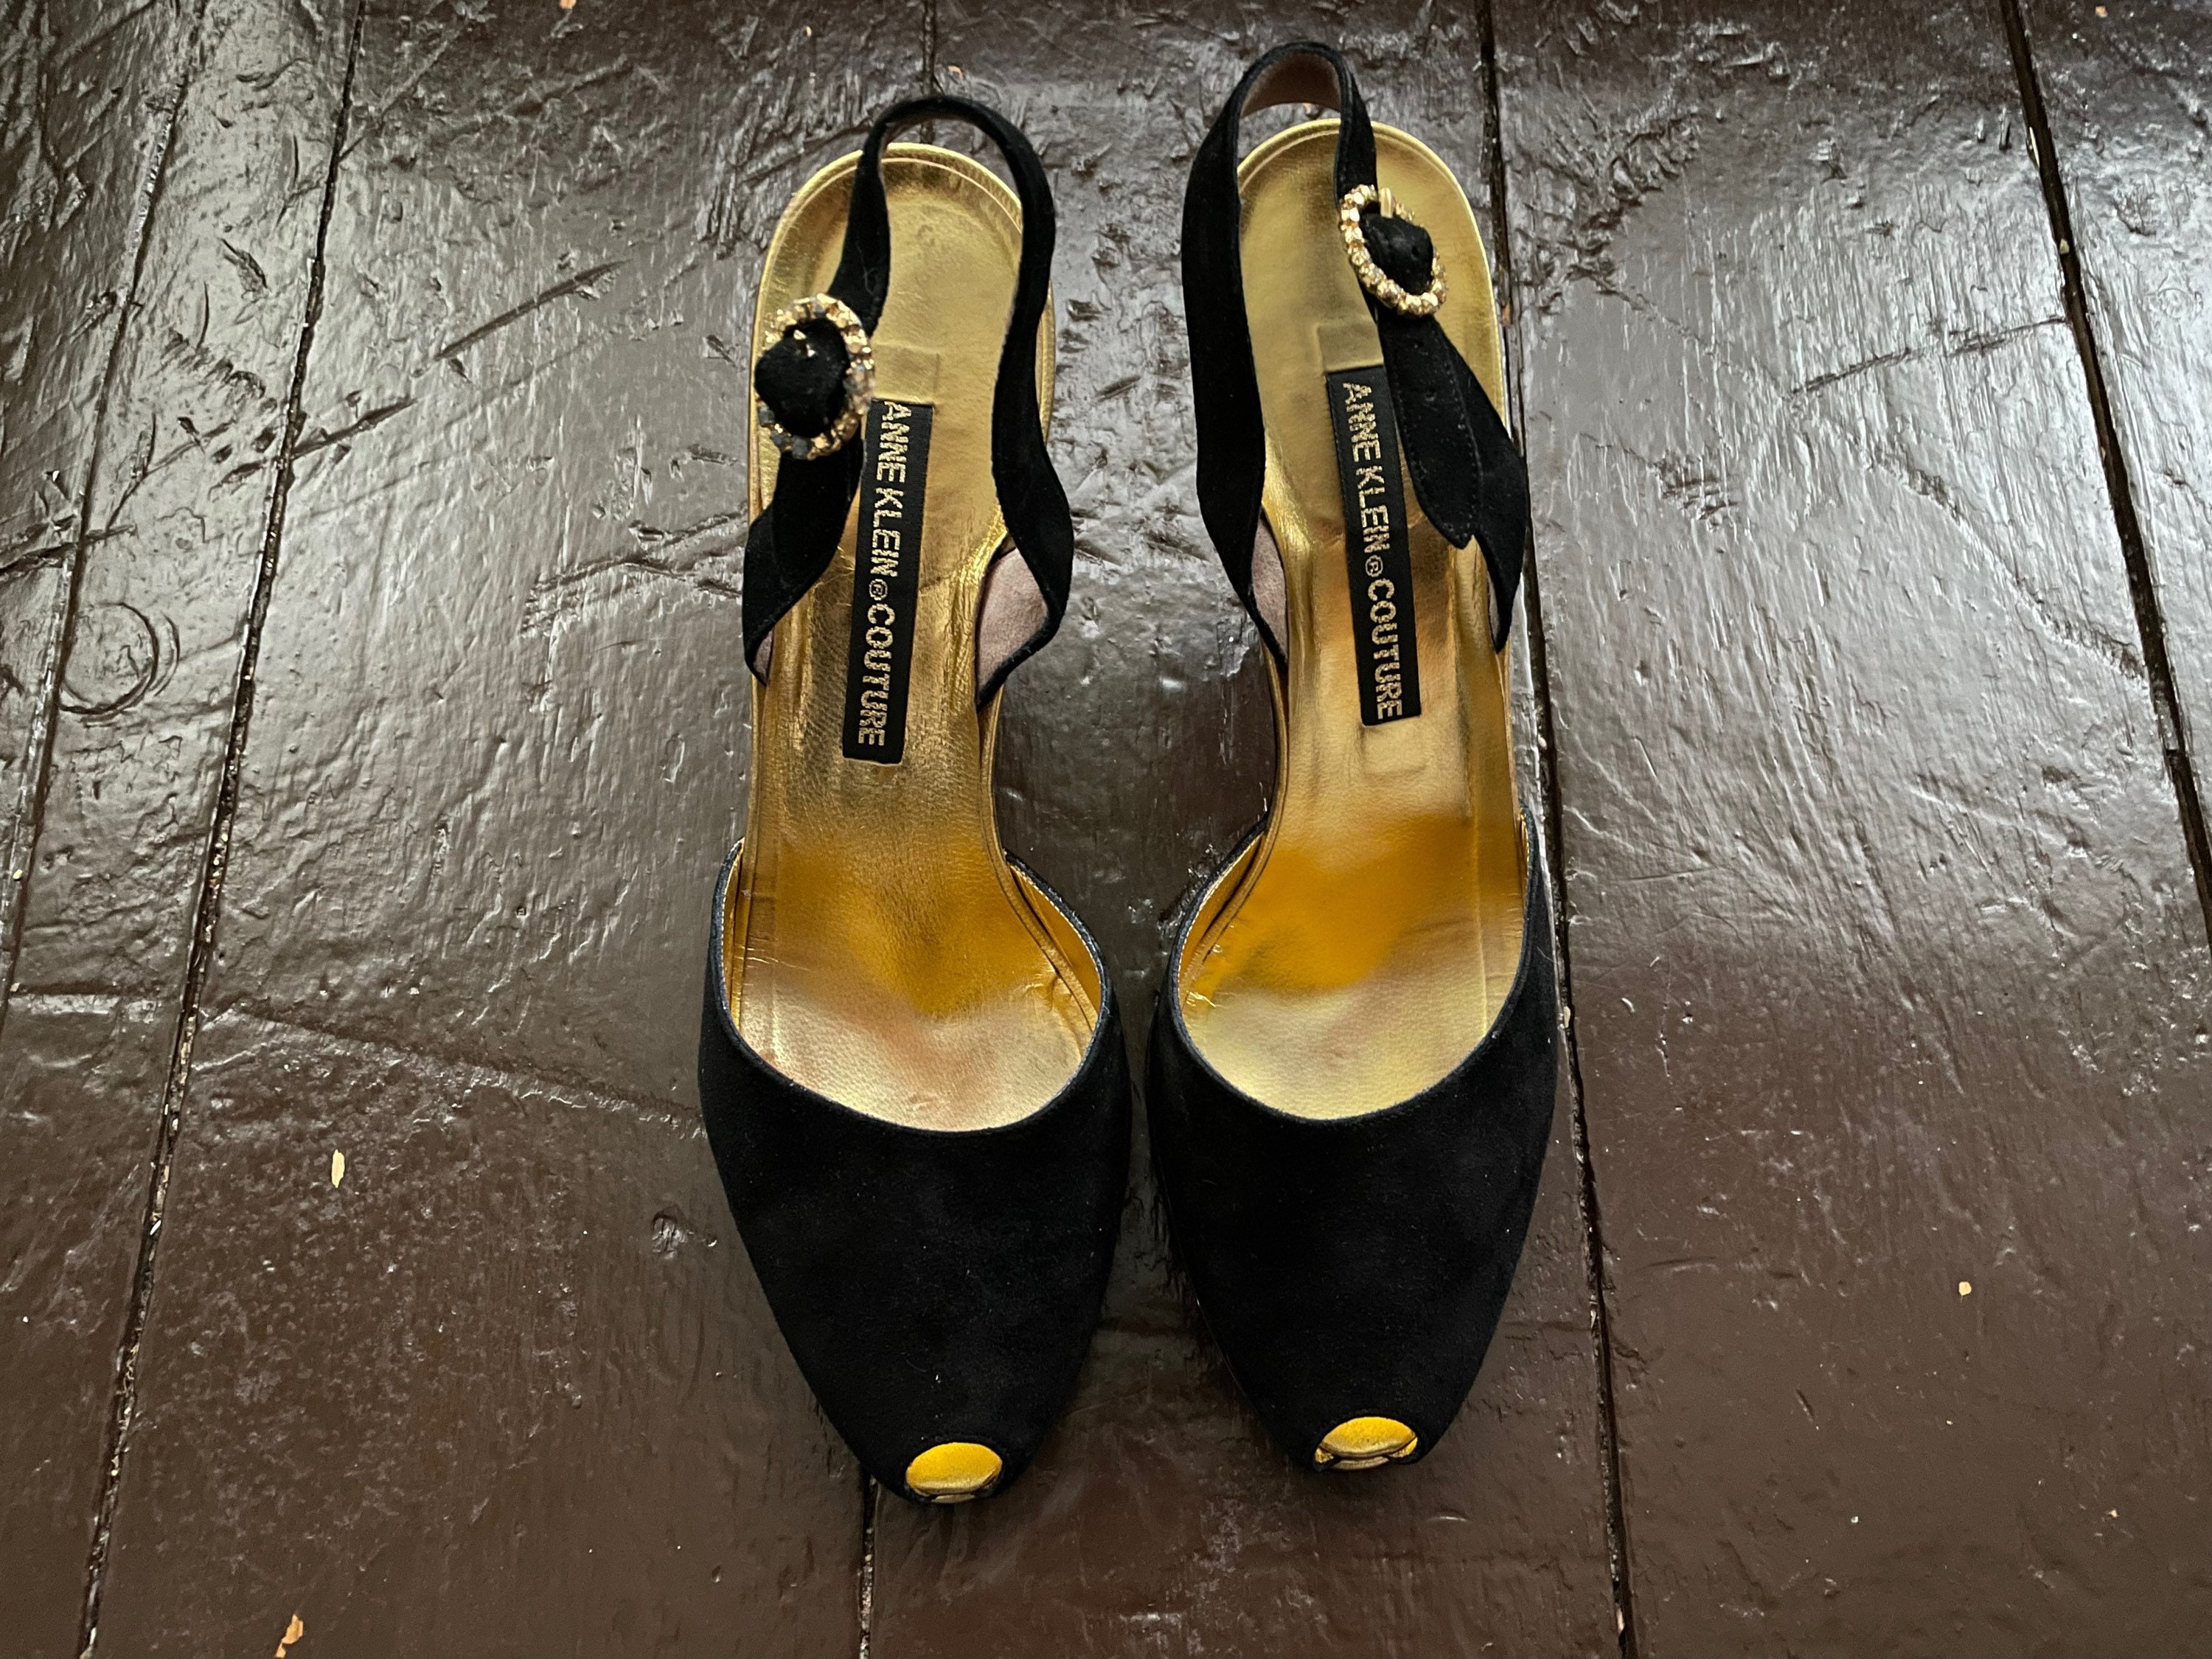 Vintage 50s DeLiso Debs 8.5 silk satin floral heels dead stock